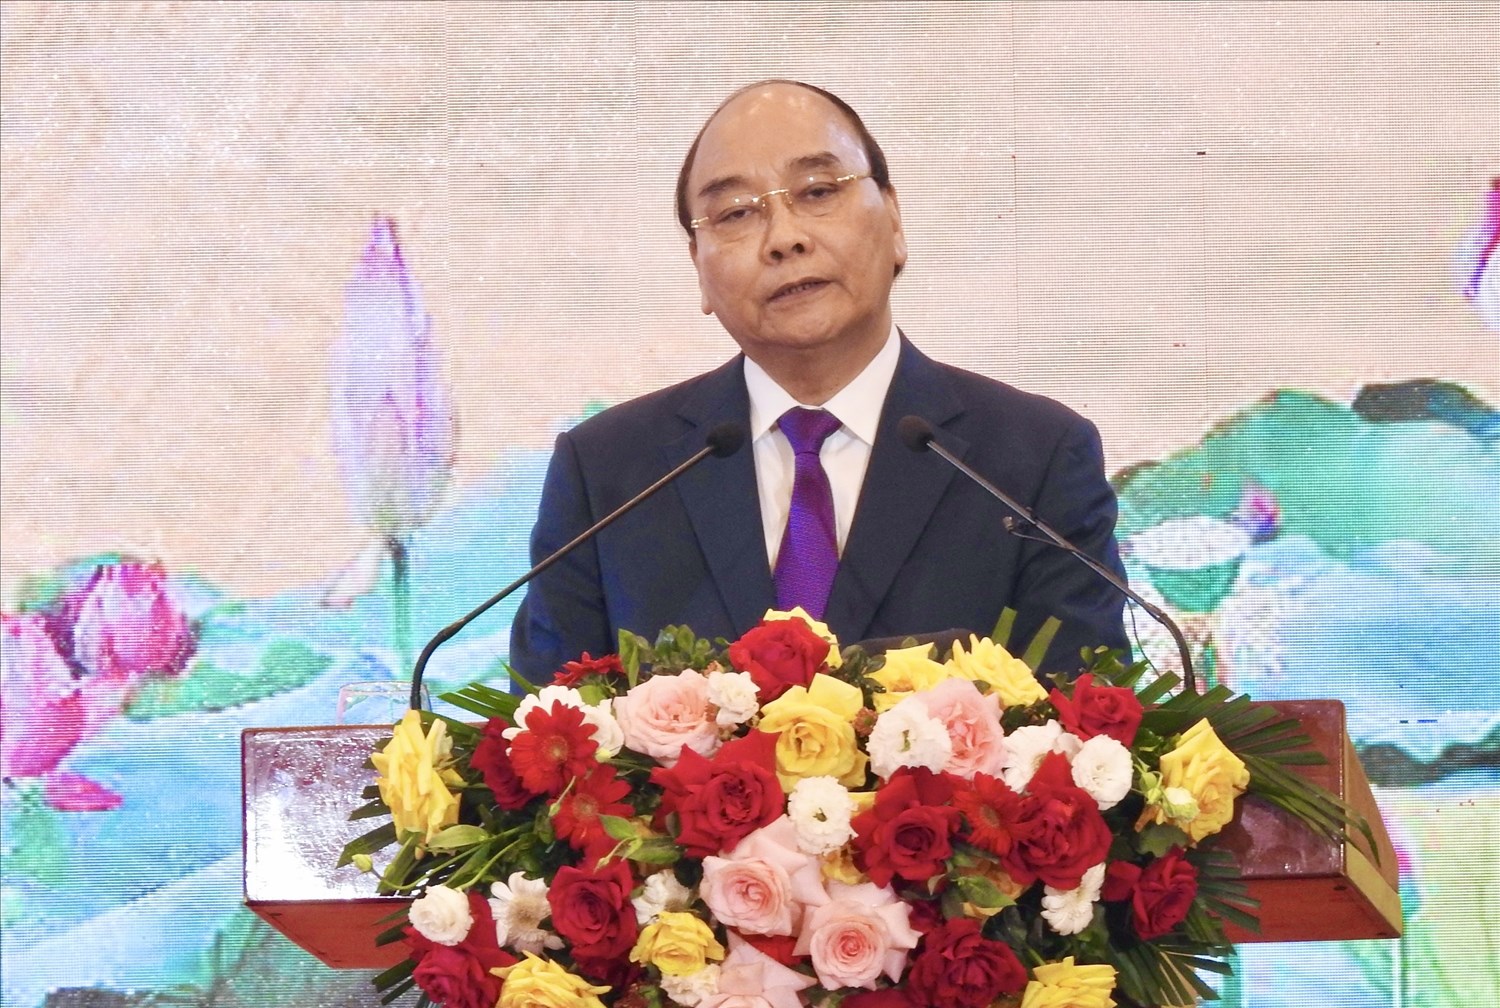 Ủy viên Bộ Chính trị, Chủ tịch nước Cộng hòa xã hội chủ nghĩa Việt Nam Nguyễn Xuân Phúc phát biểu tại Hội nghị